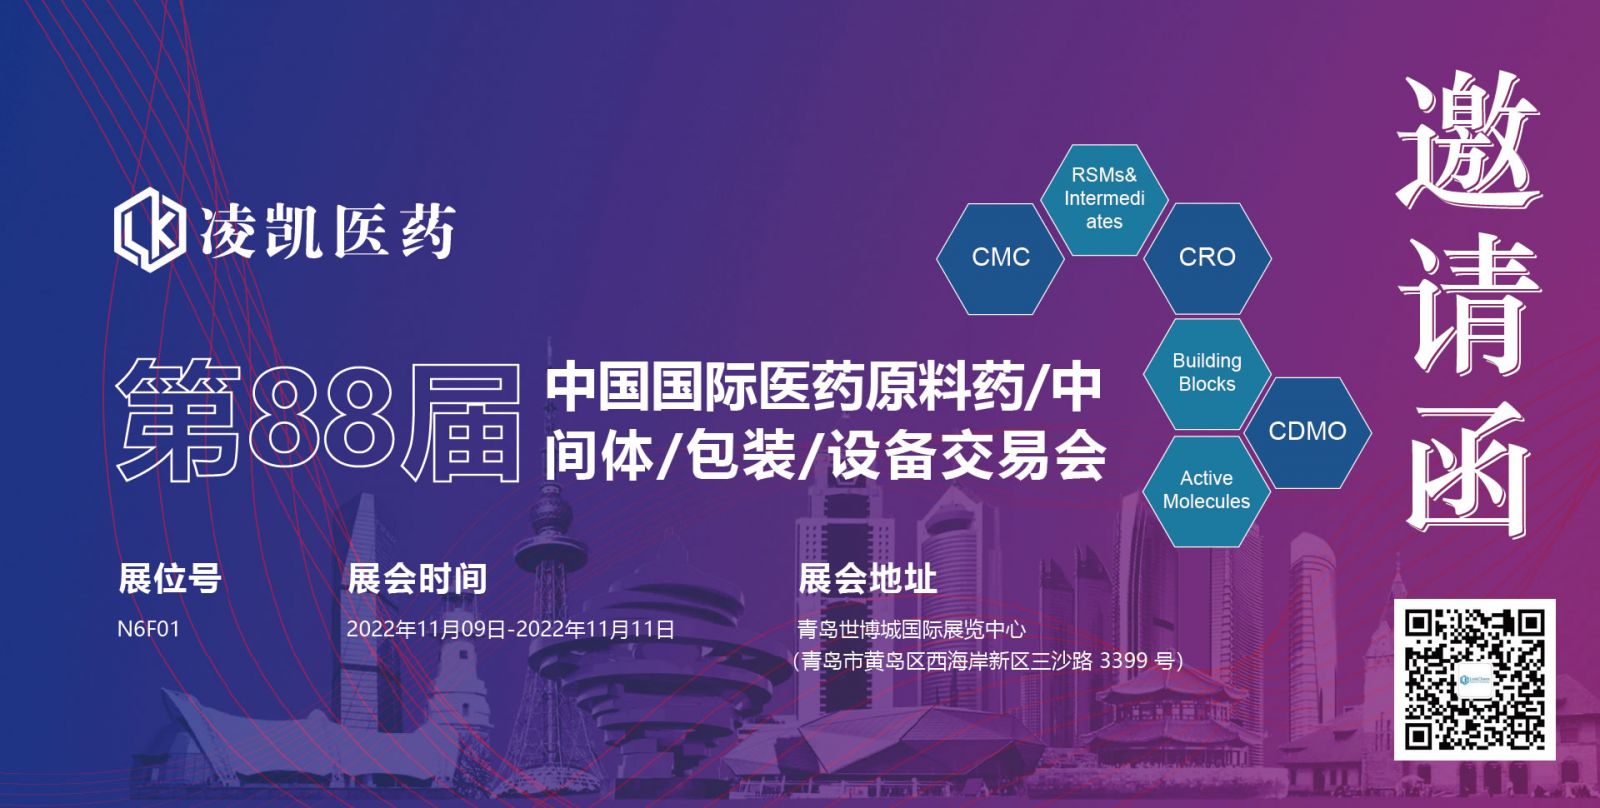 展会邀请| 第 88 届中国国际医药原料药/中间体/包装/设备交易会（API）